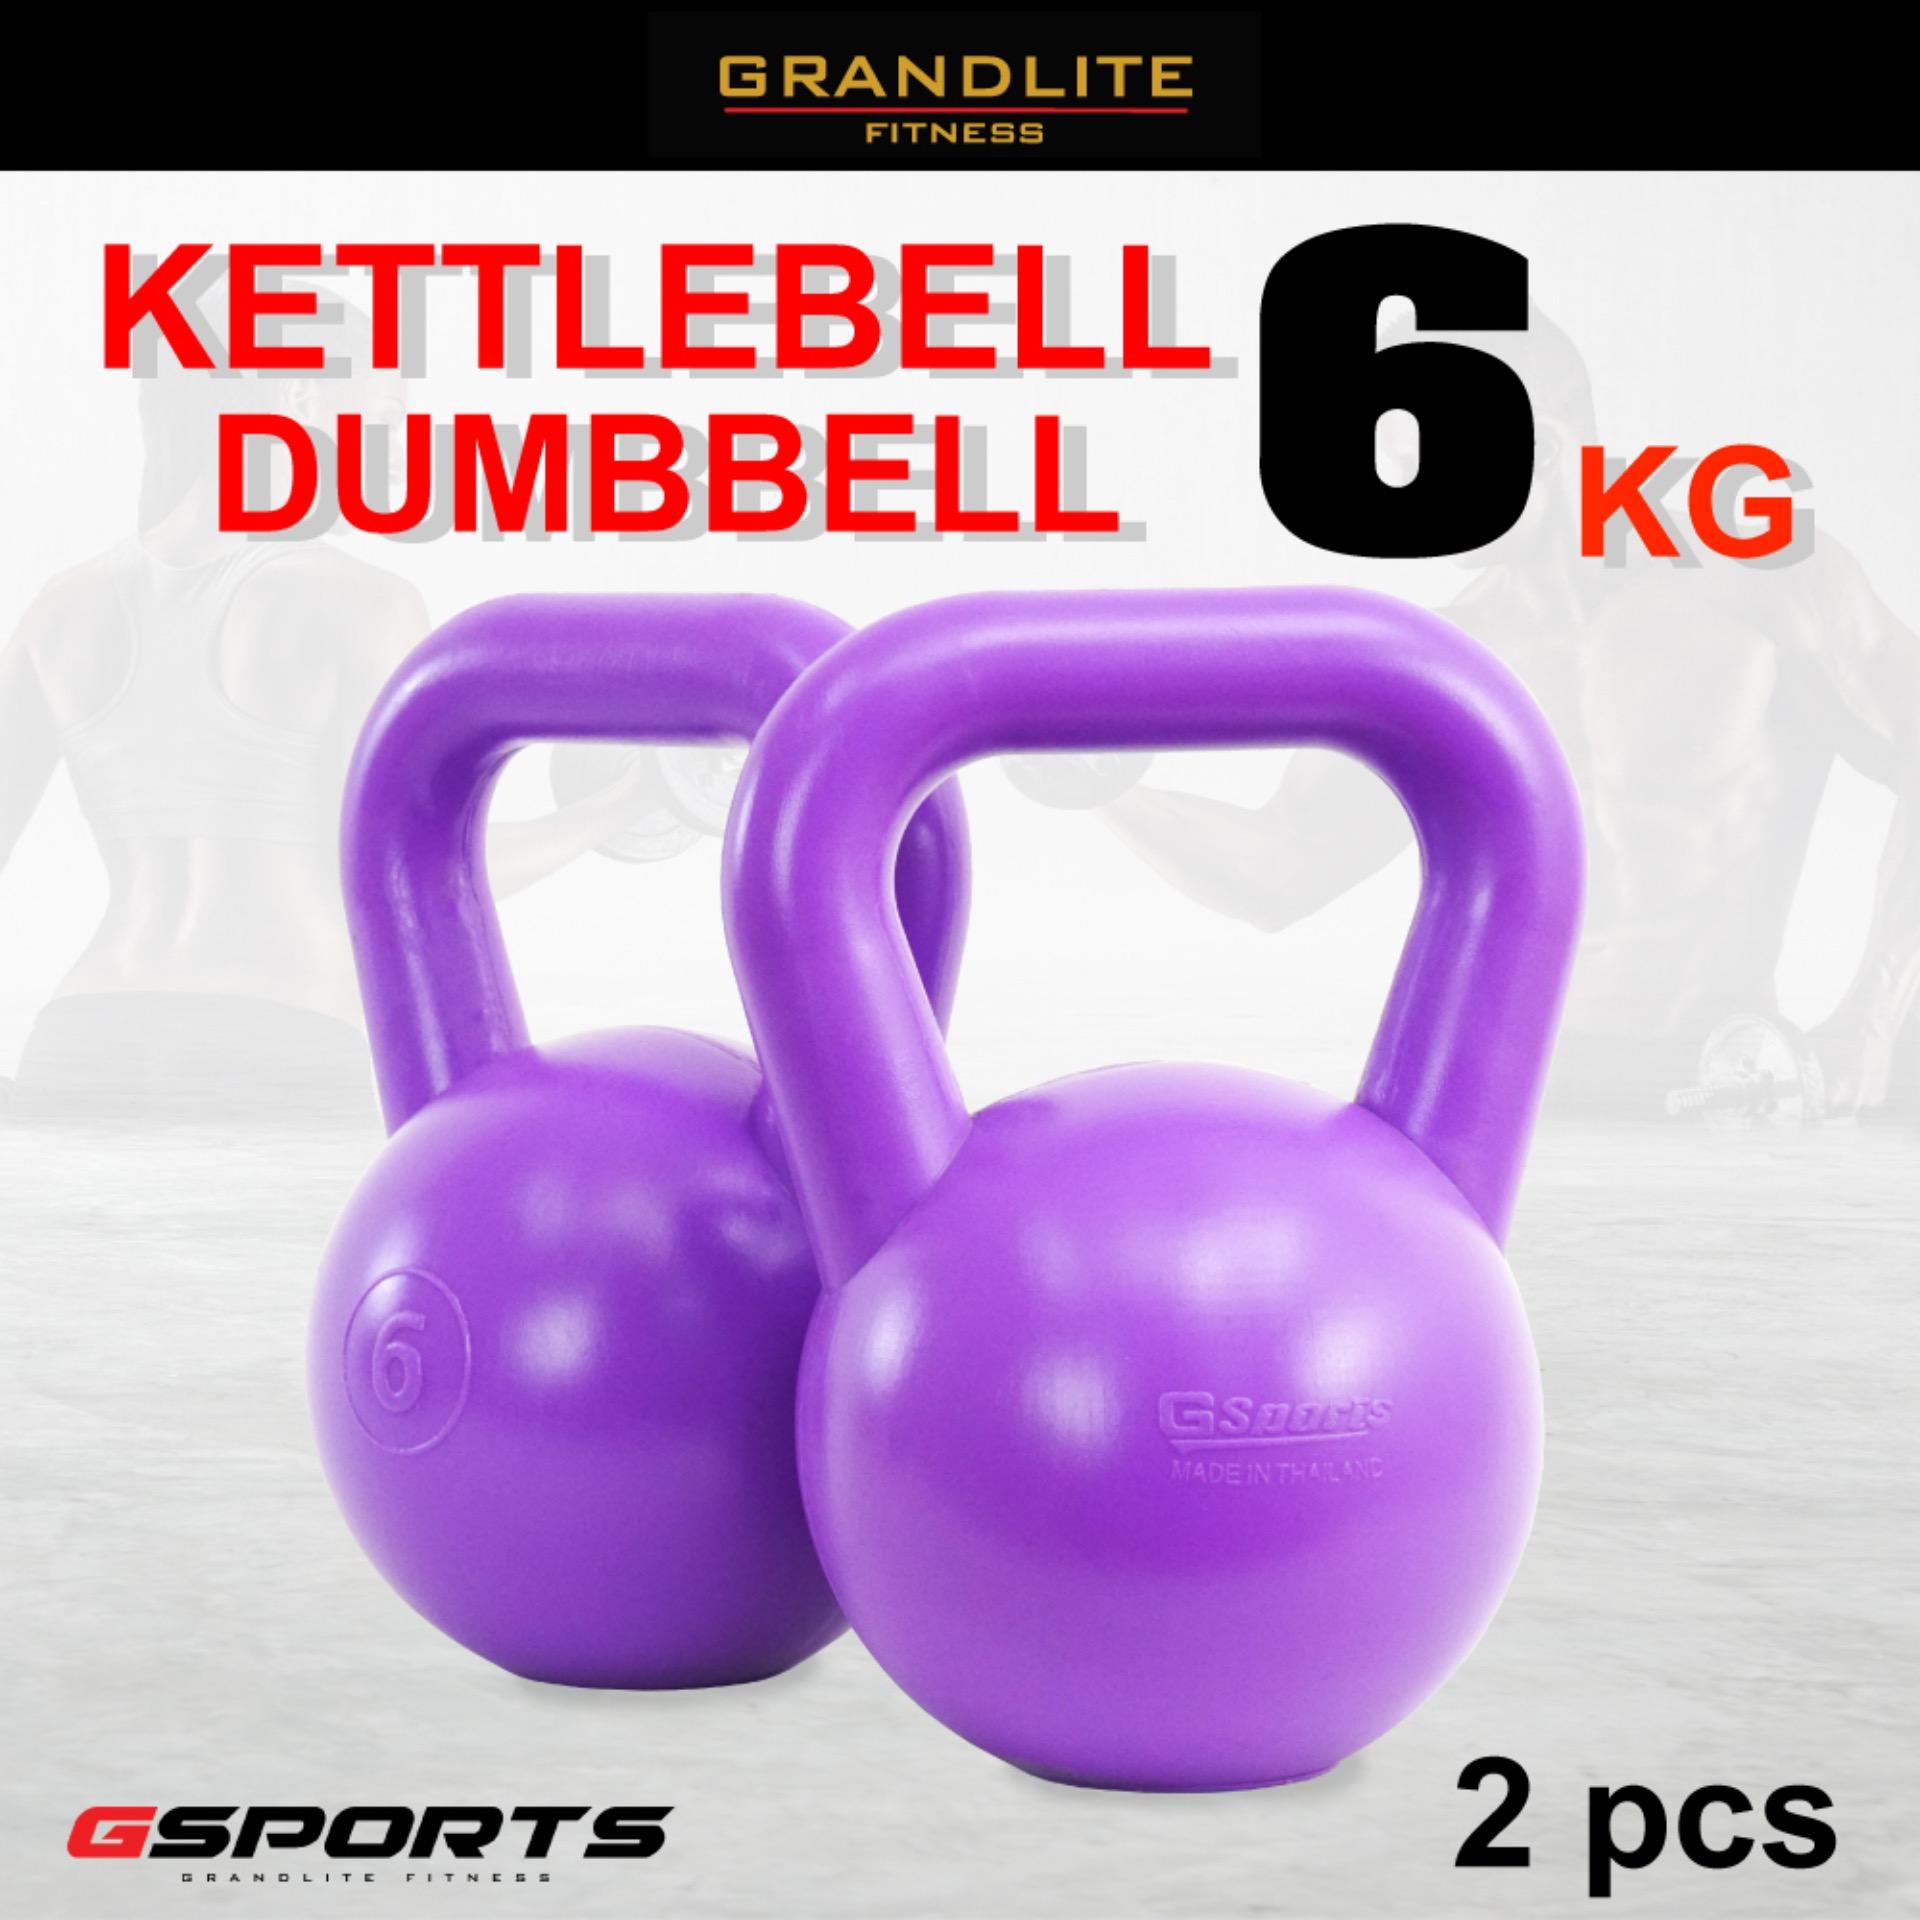 Gsports Kettlebell Dumbbell 6KG x2 เคตเทิลเบล ดัมเบลหูหิ้ว 6กก. *แพ็คคู่